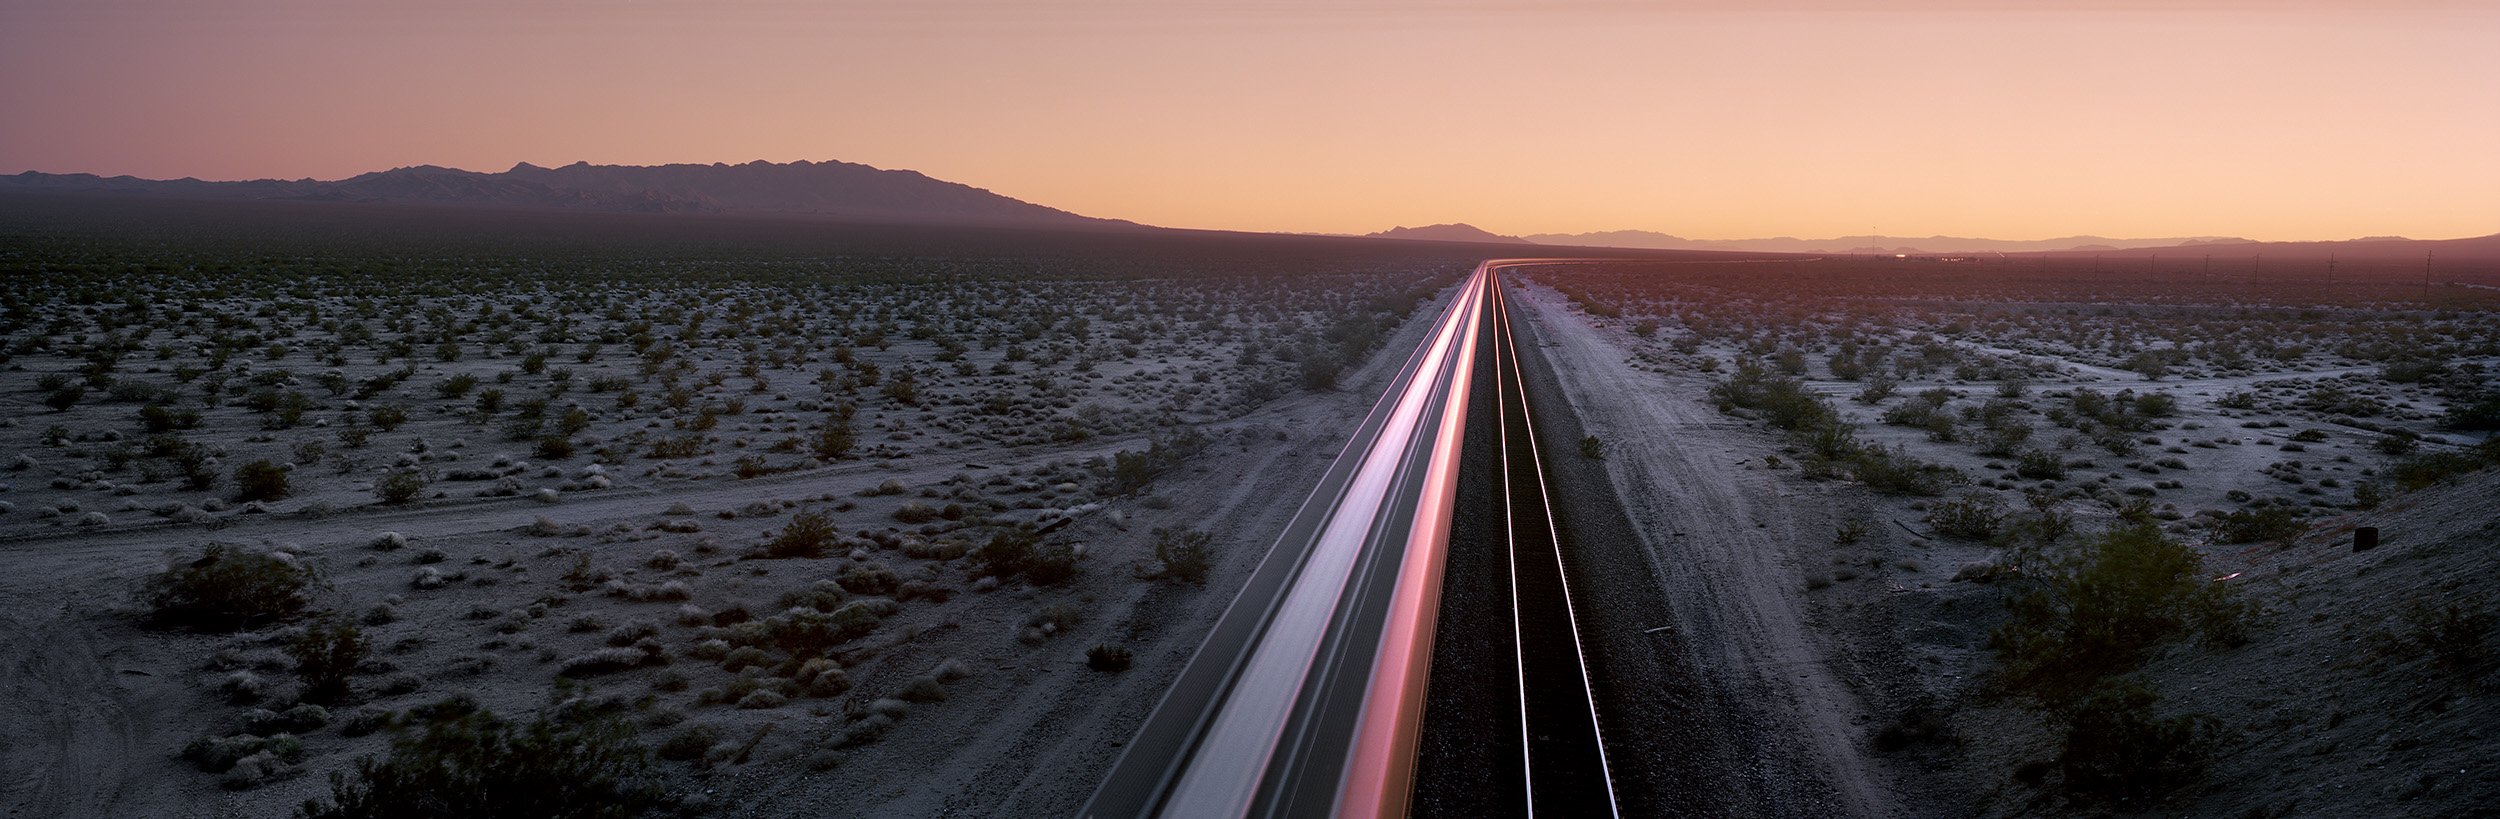  Moving Train. Eastern Mojave. November 25, 2011 